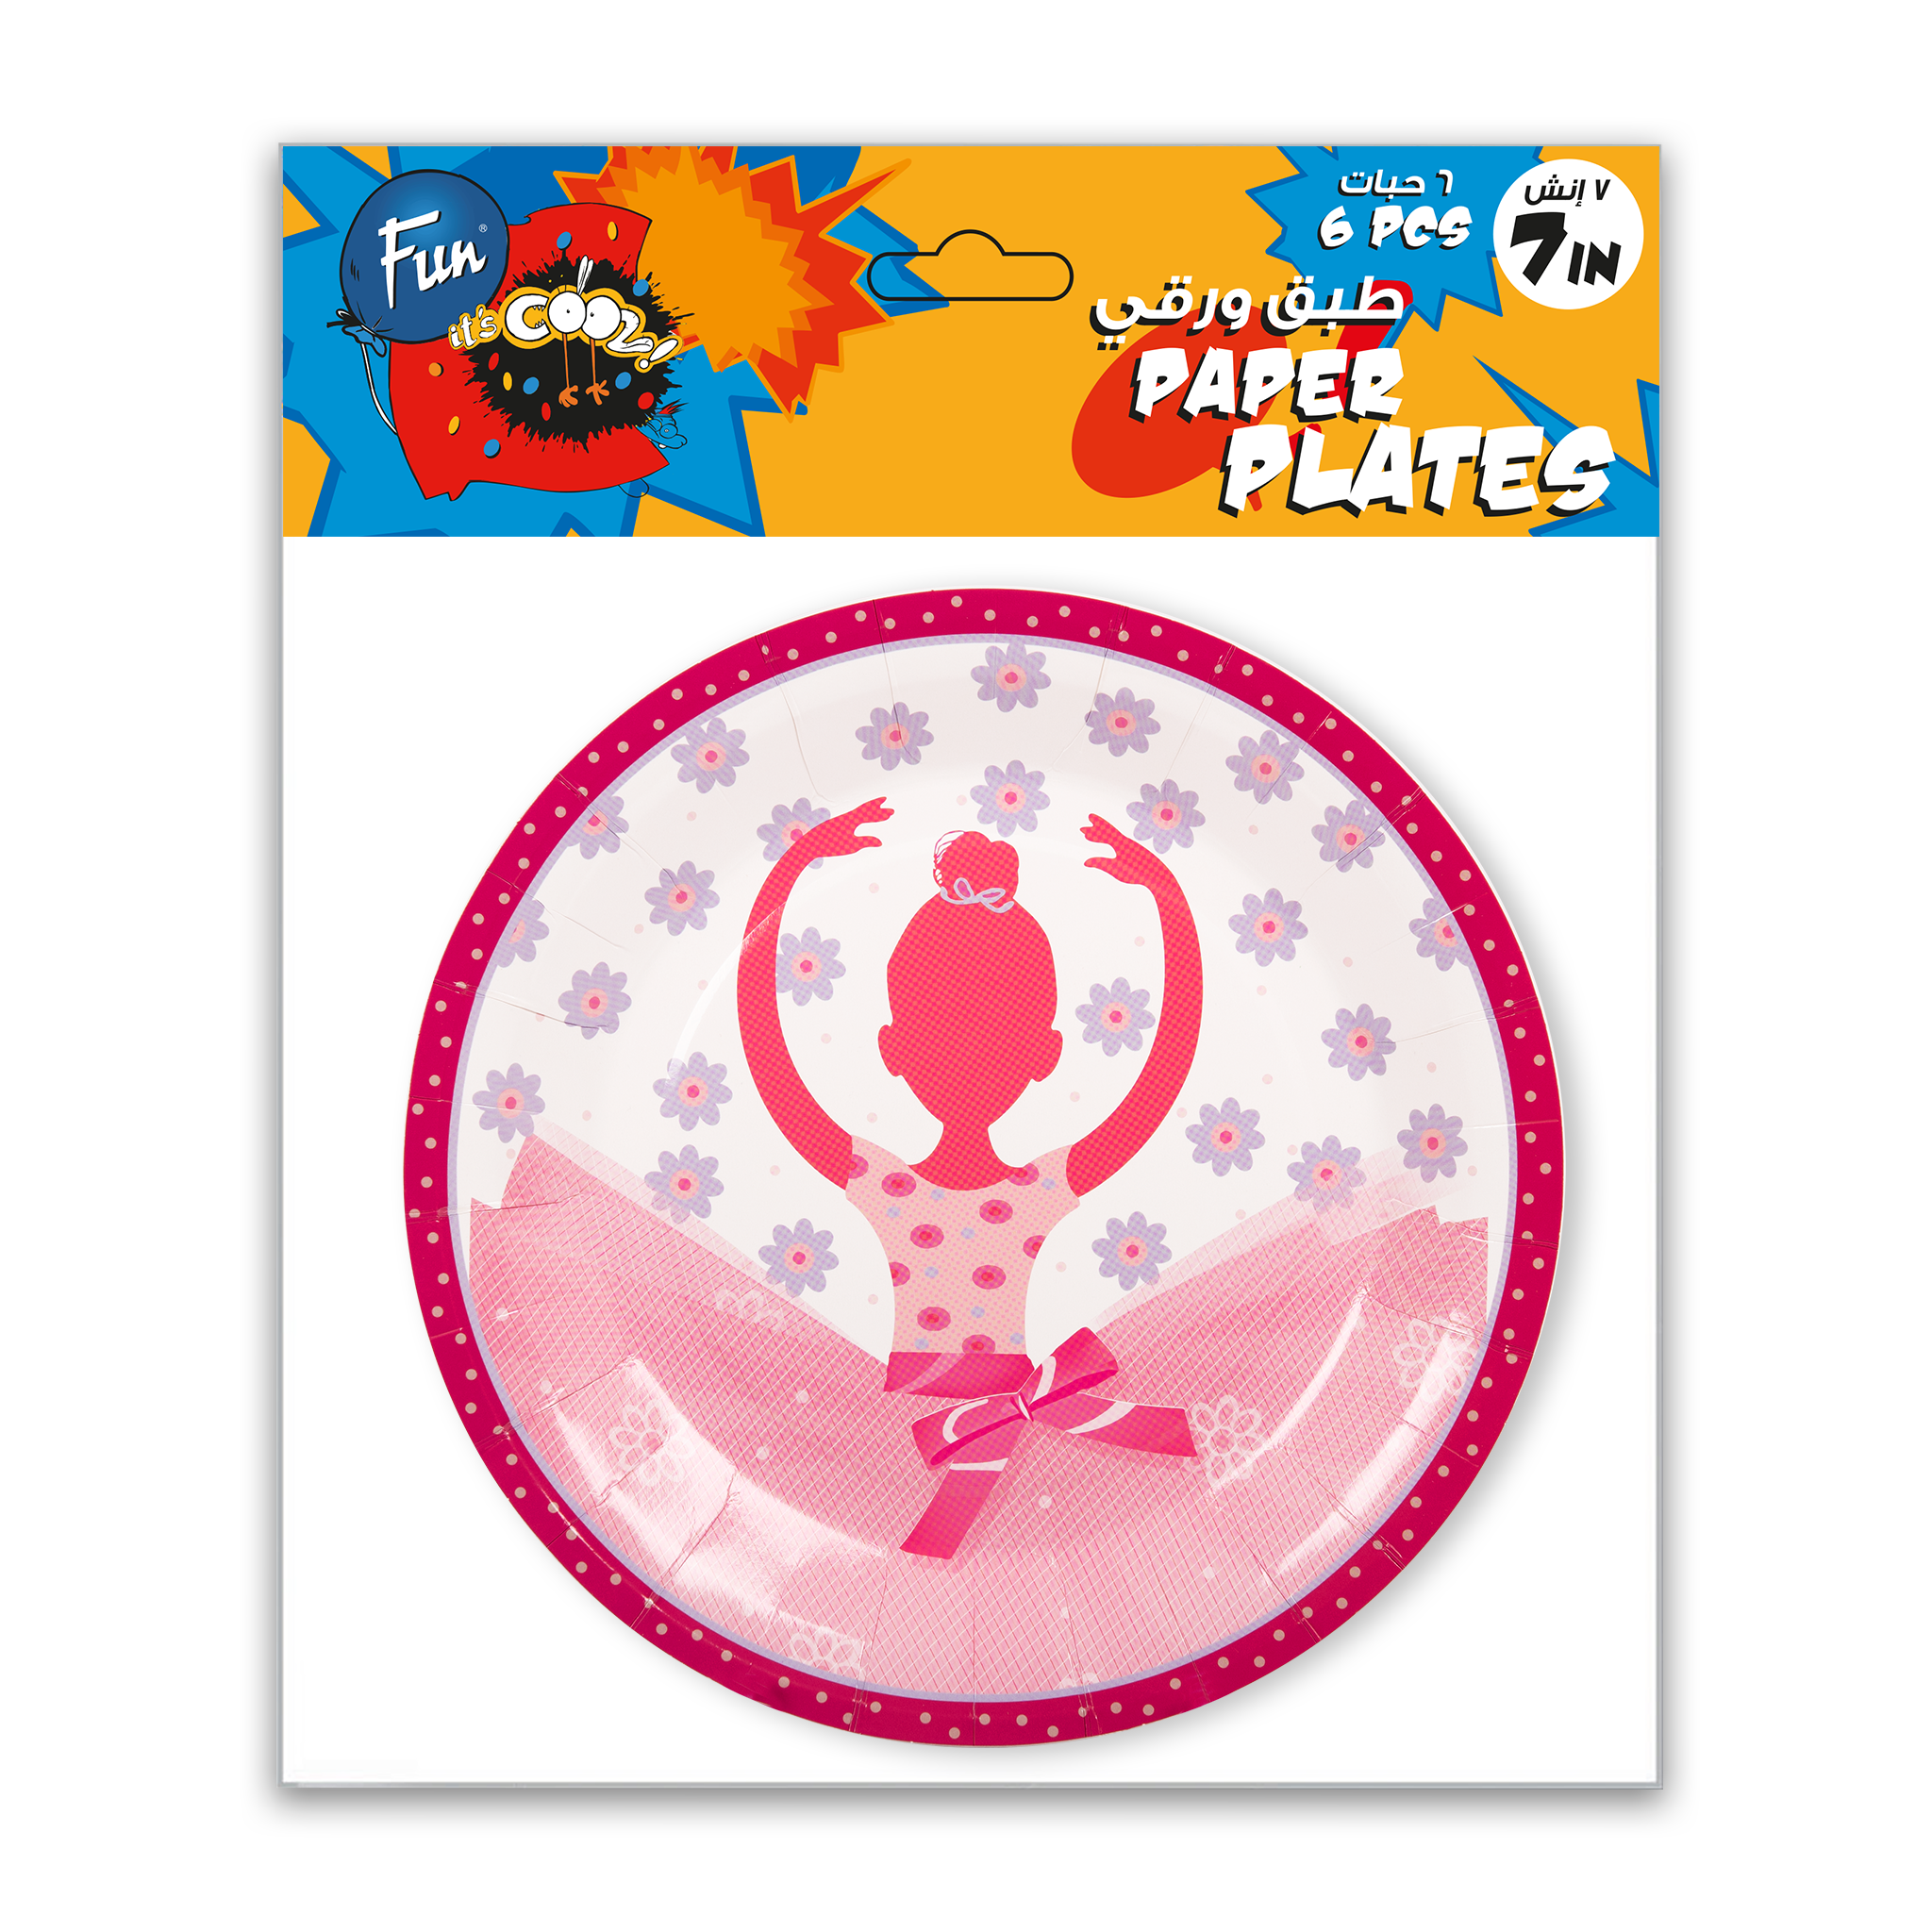 Fun® Its Cool Paper Plate 7in - Ballerina 6pcs